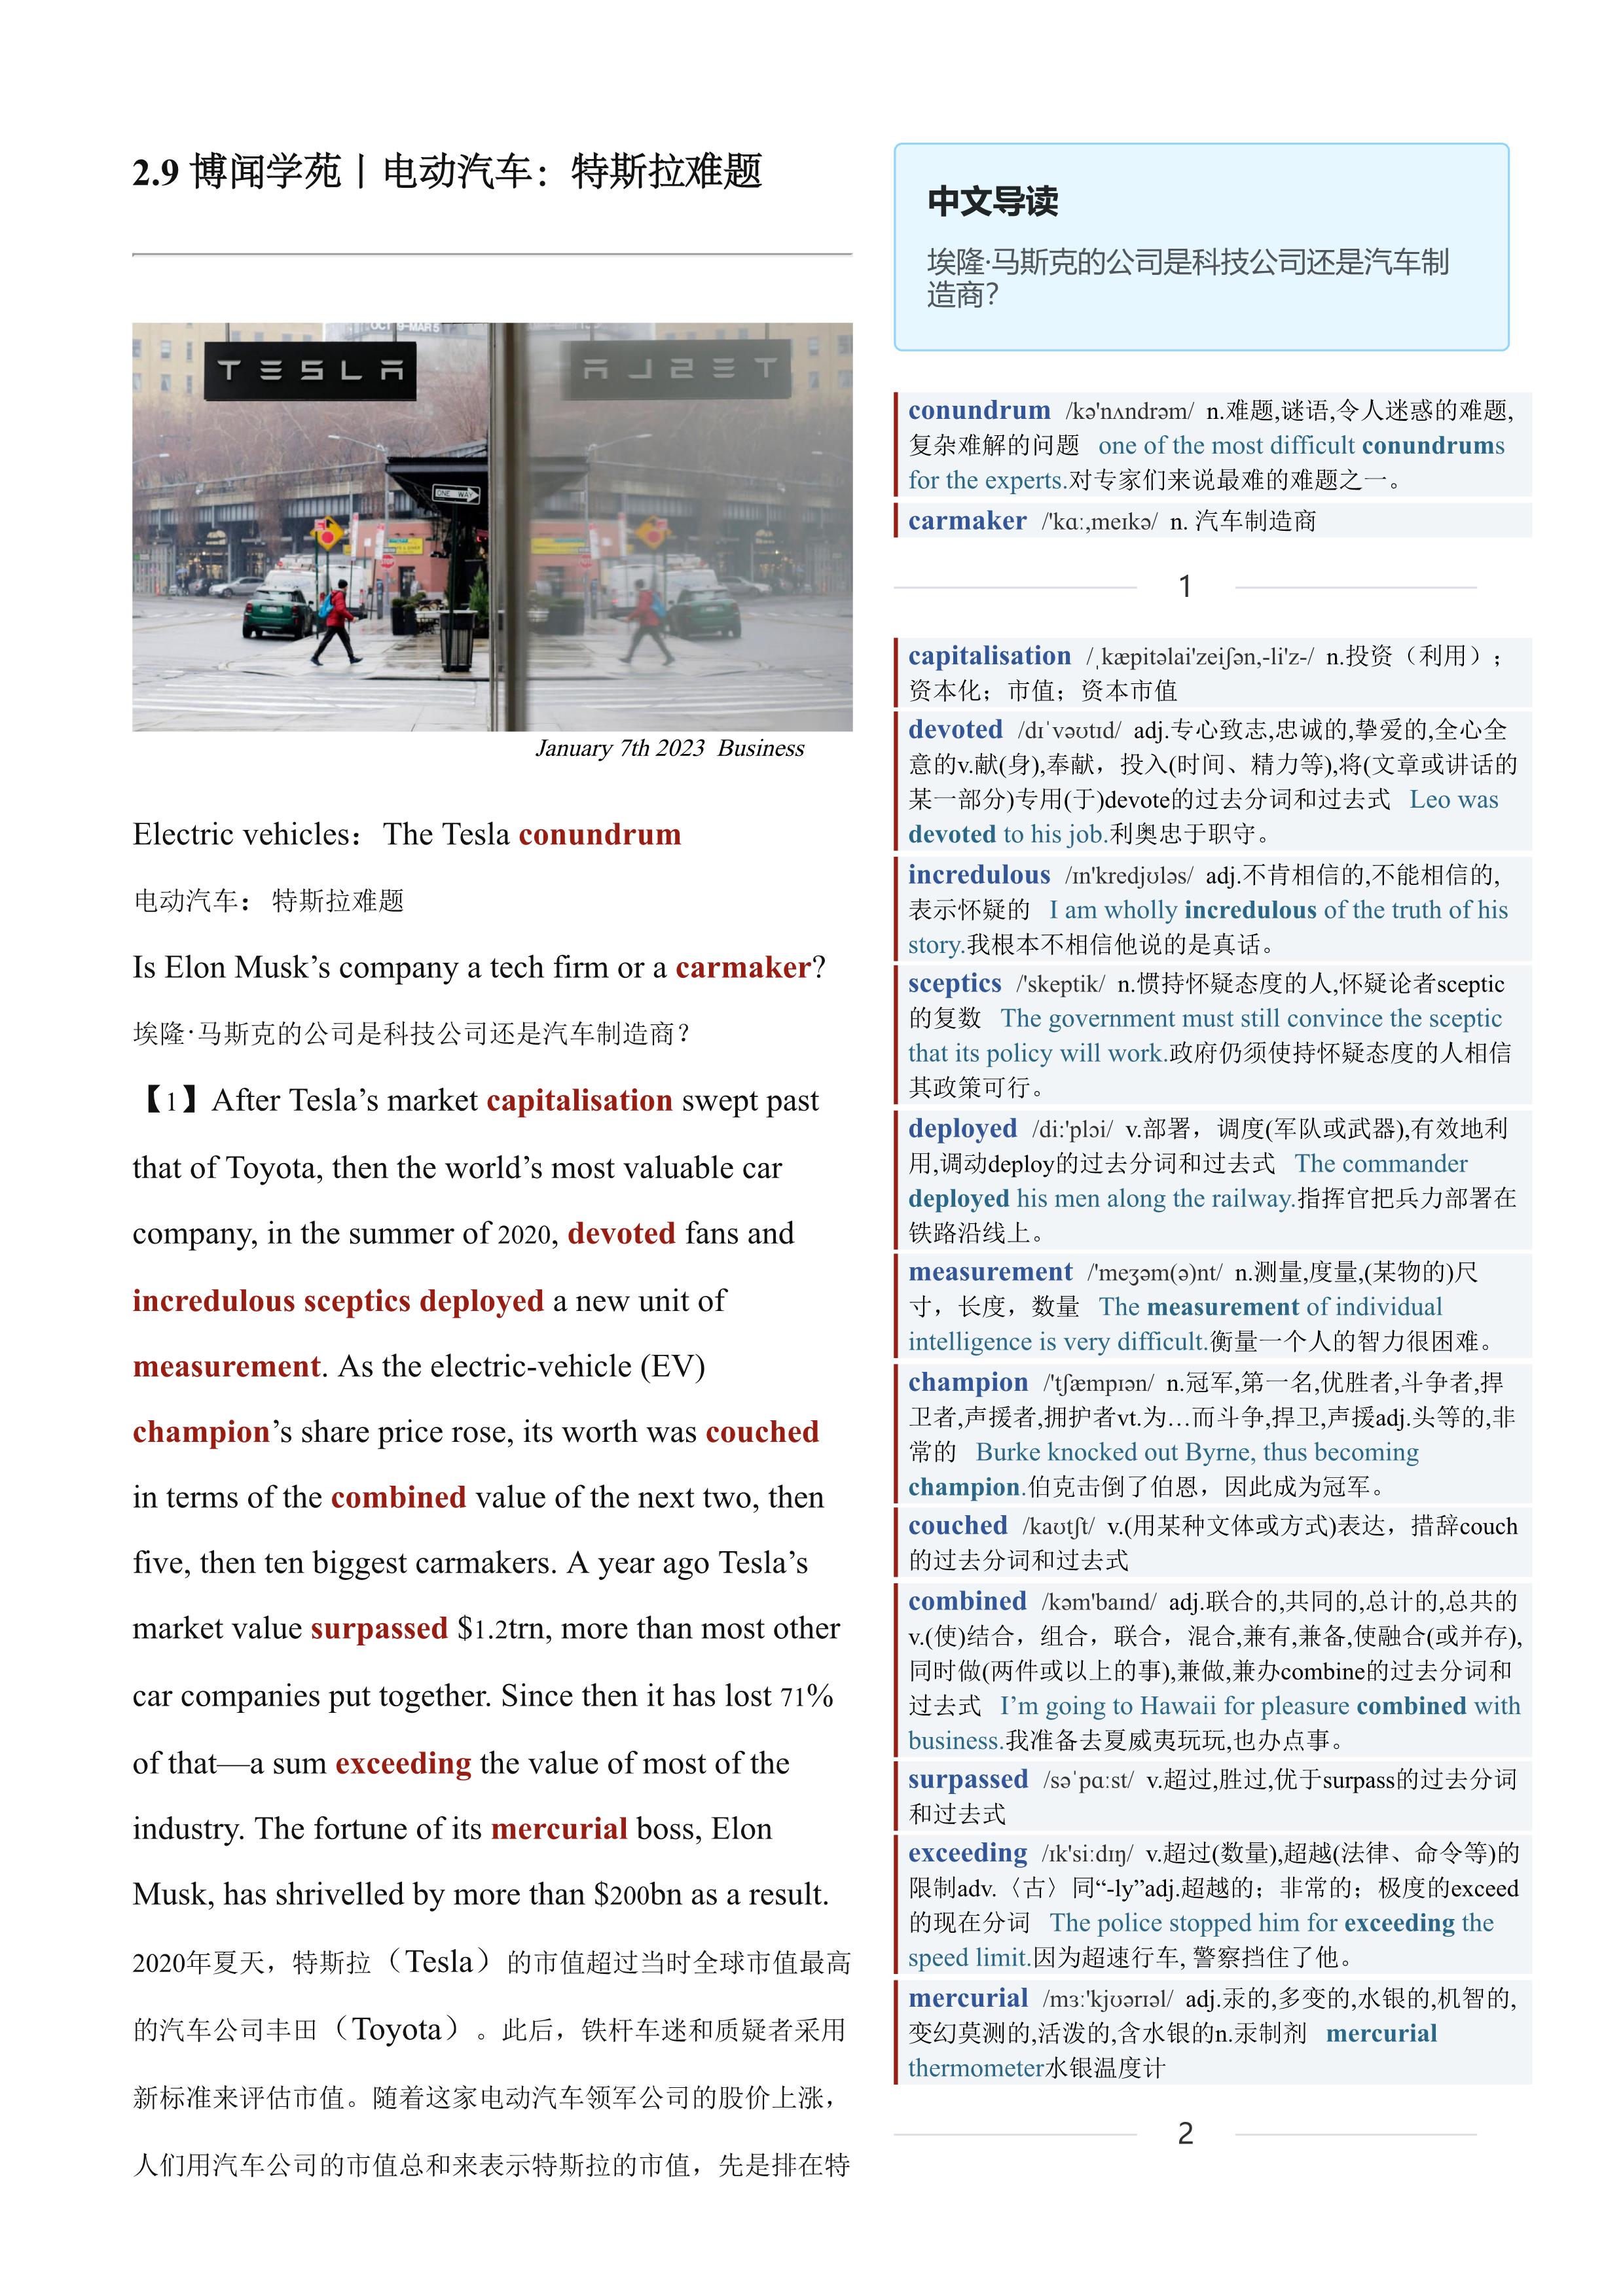 2023.02.09 经济学人双语精读丨电动汽车：特斯拉难题 (.PDF/DOC/MP3)